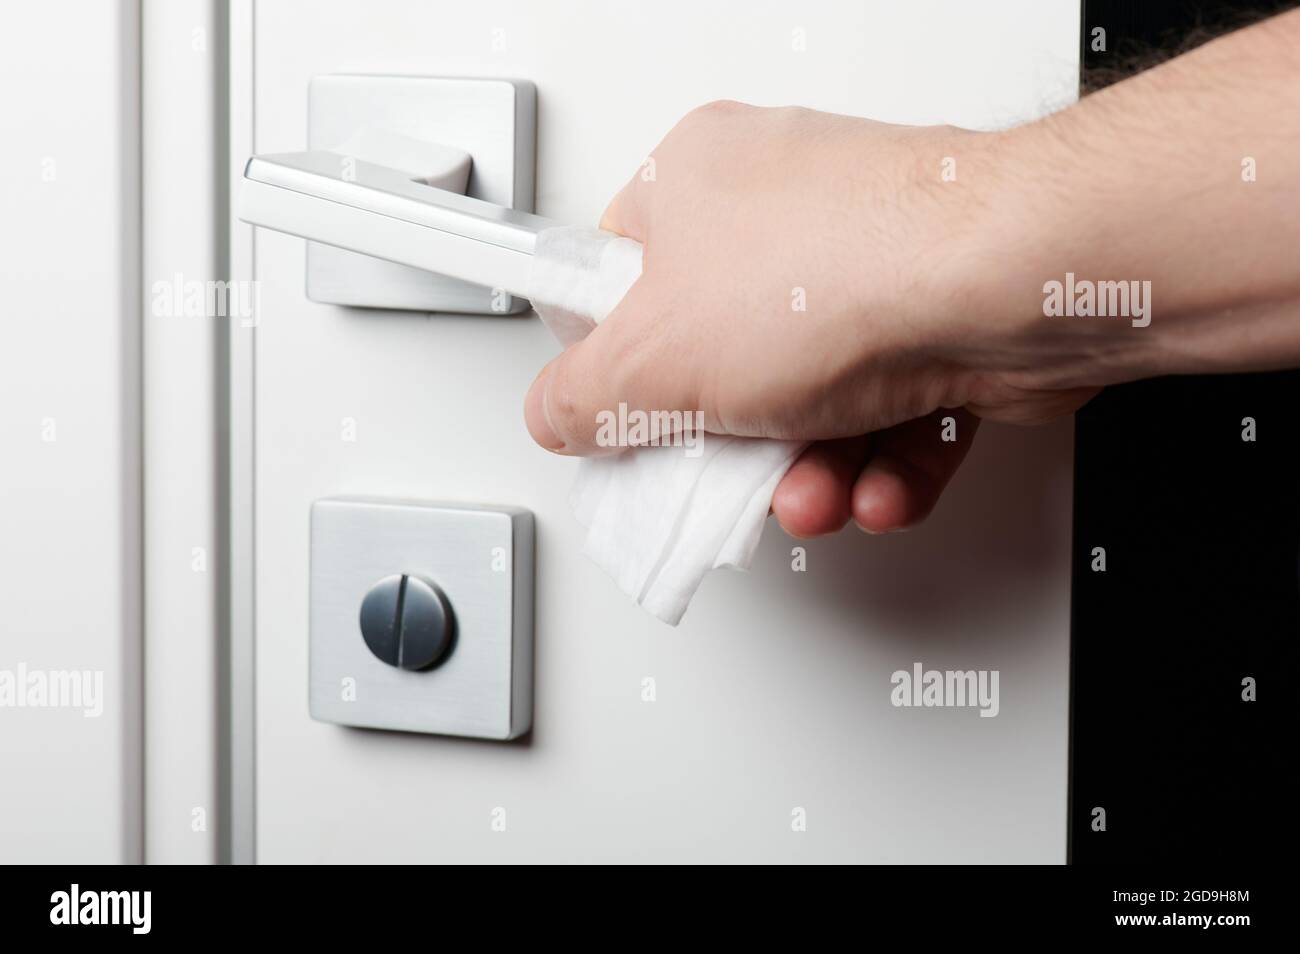 Open door handle with wet wipe on hand close up view Stock Photo